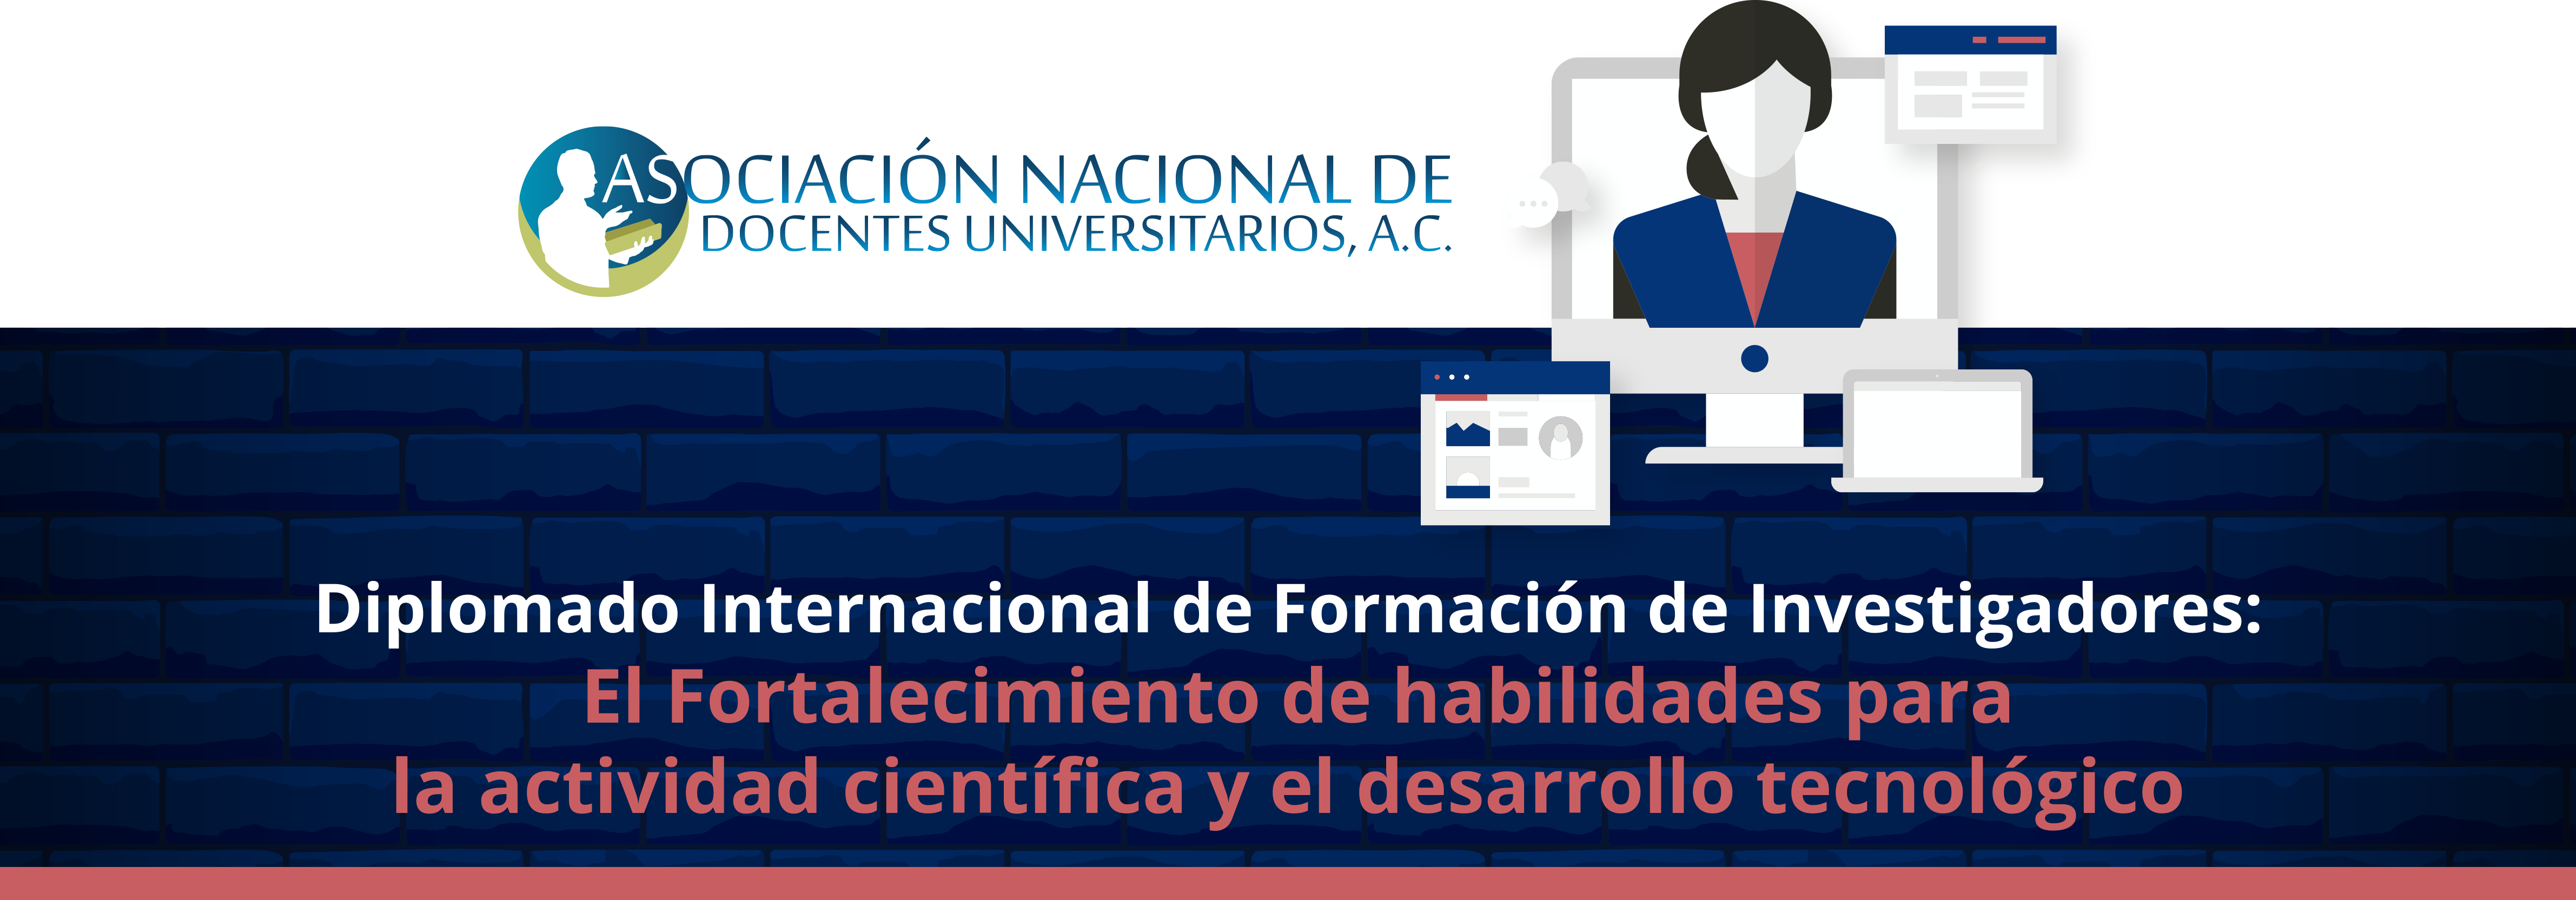 asociacion_nacional_de_docentes_universitarios.jpg